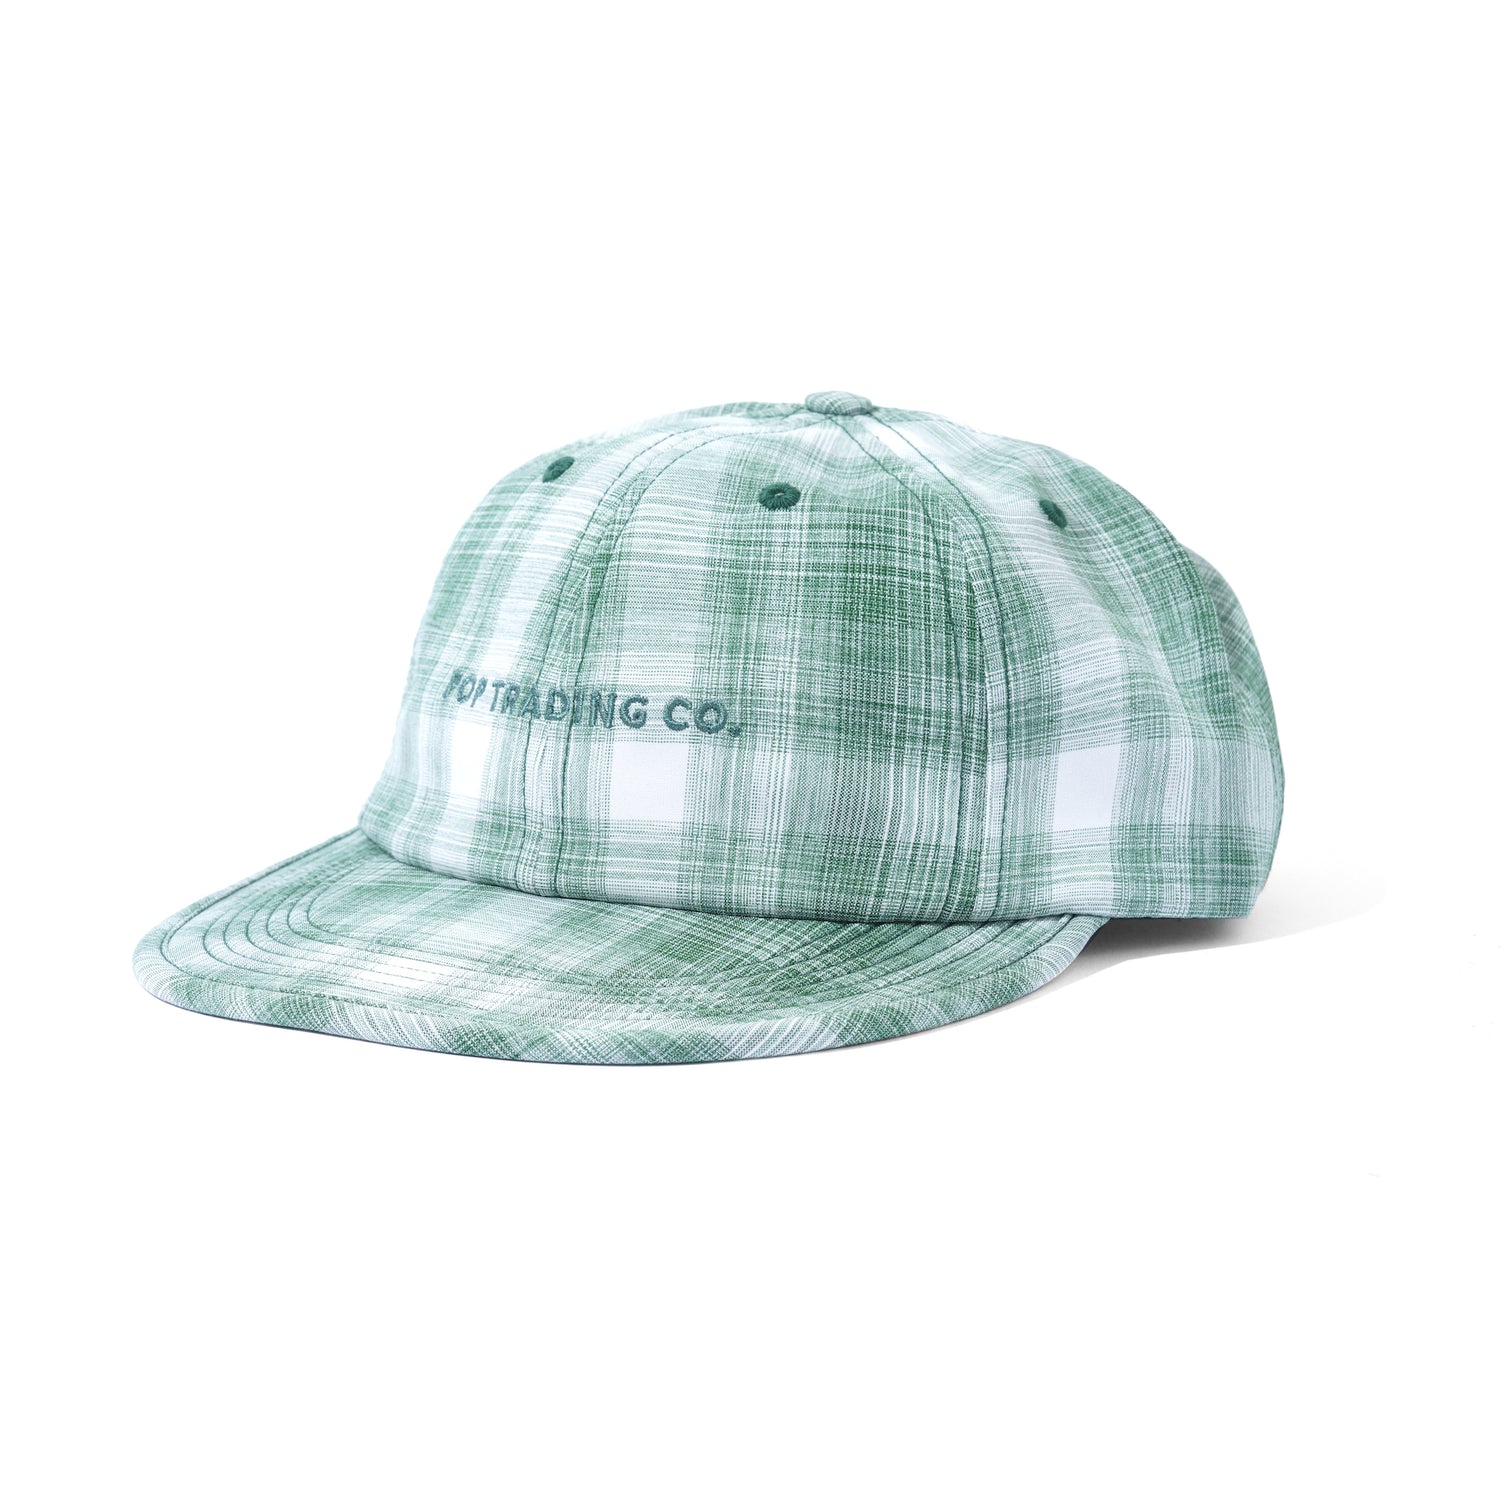 Flexfoam Sixpanel Hat, Green Check